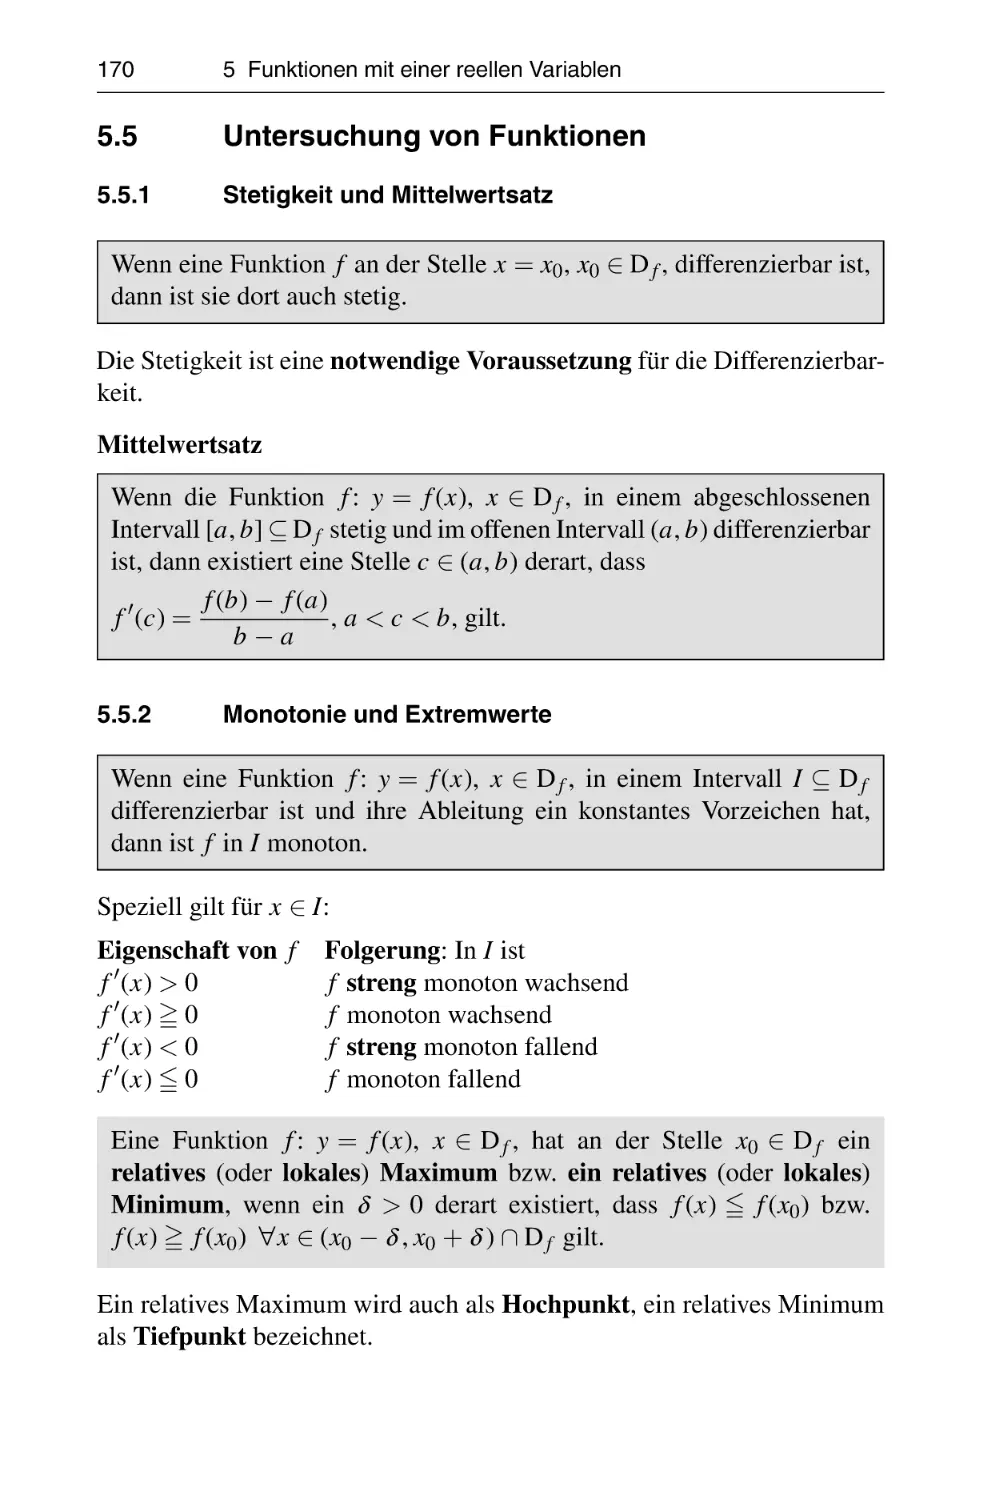 5.5 Untersuchung von Funktionen
5.5.1 Stetigkeit und Mittelwertsatz
5.5.2 Monotonie und Extremwerte